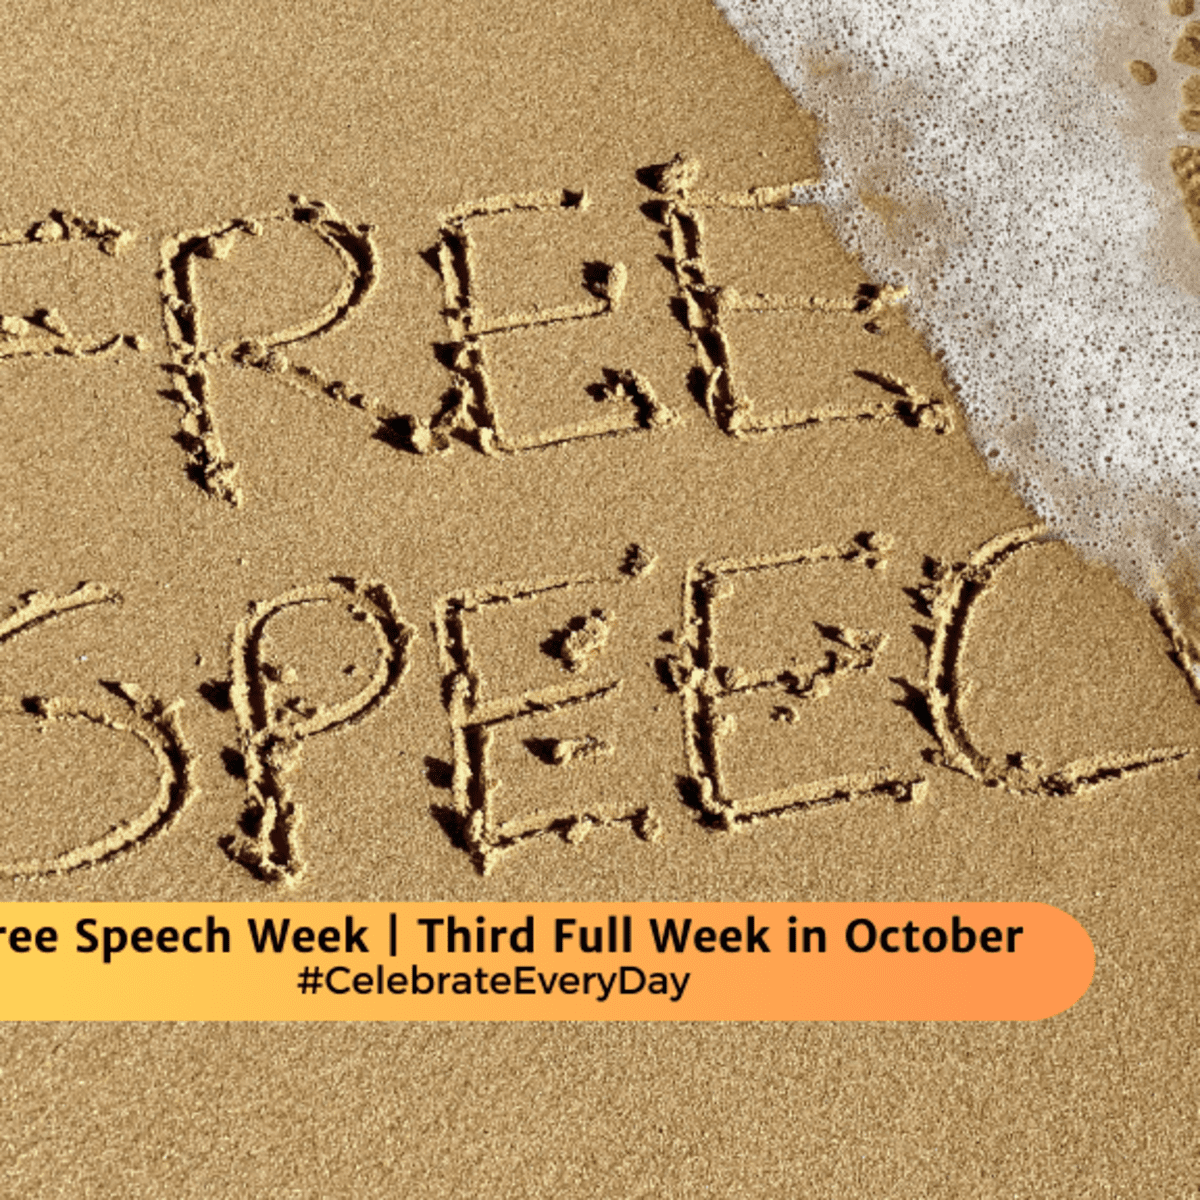 NFSW - National Freedom of Speech Week